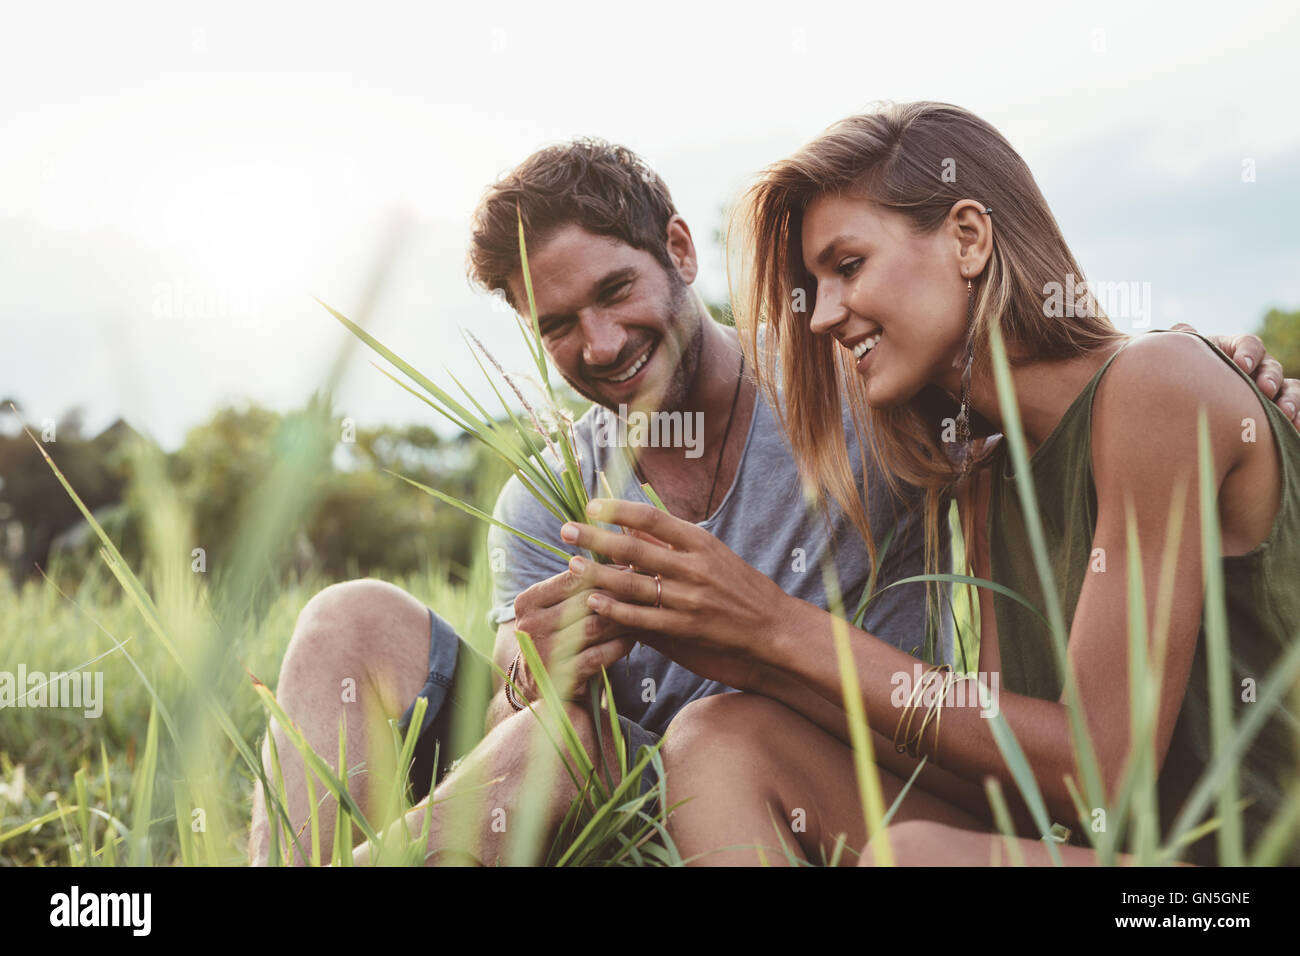 Paar in einem Feld Gras sitzen. Mann und Frau gemeinsam mit Wild grass in der hand. Stockfoto